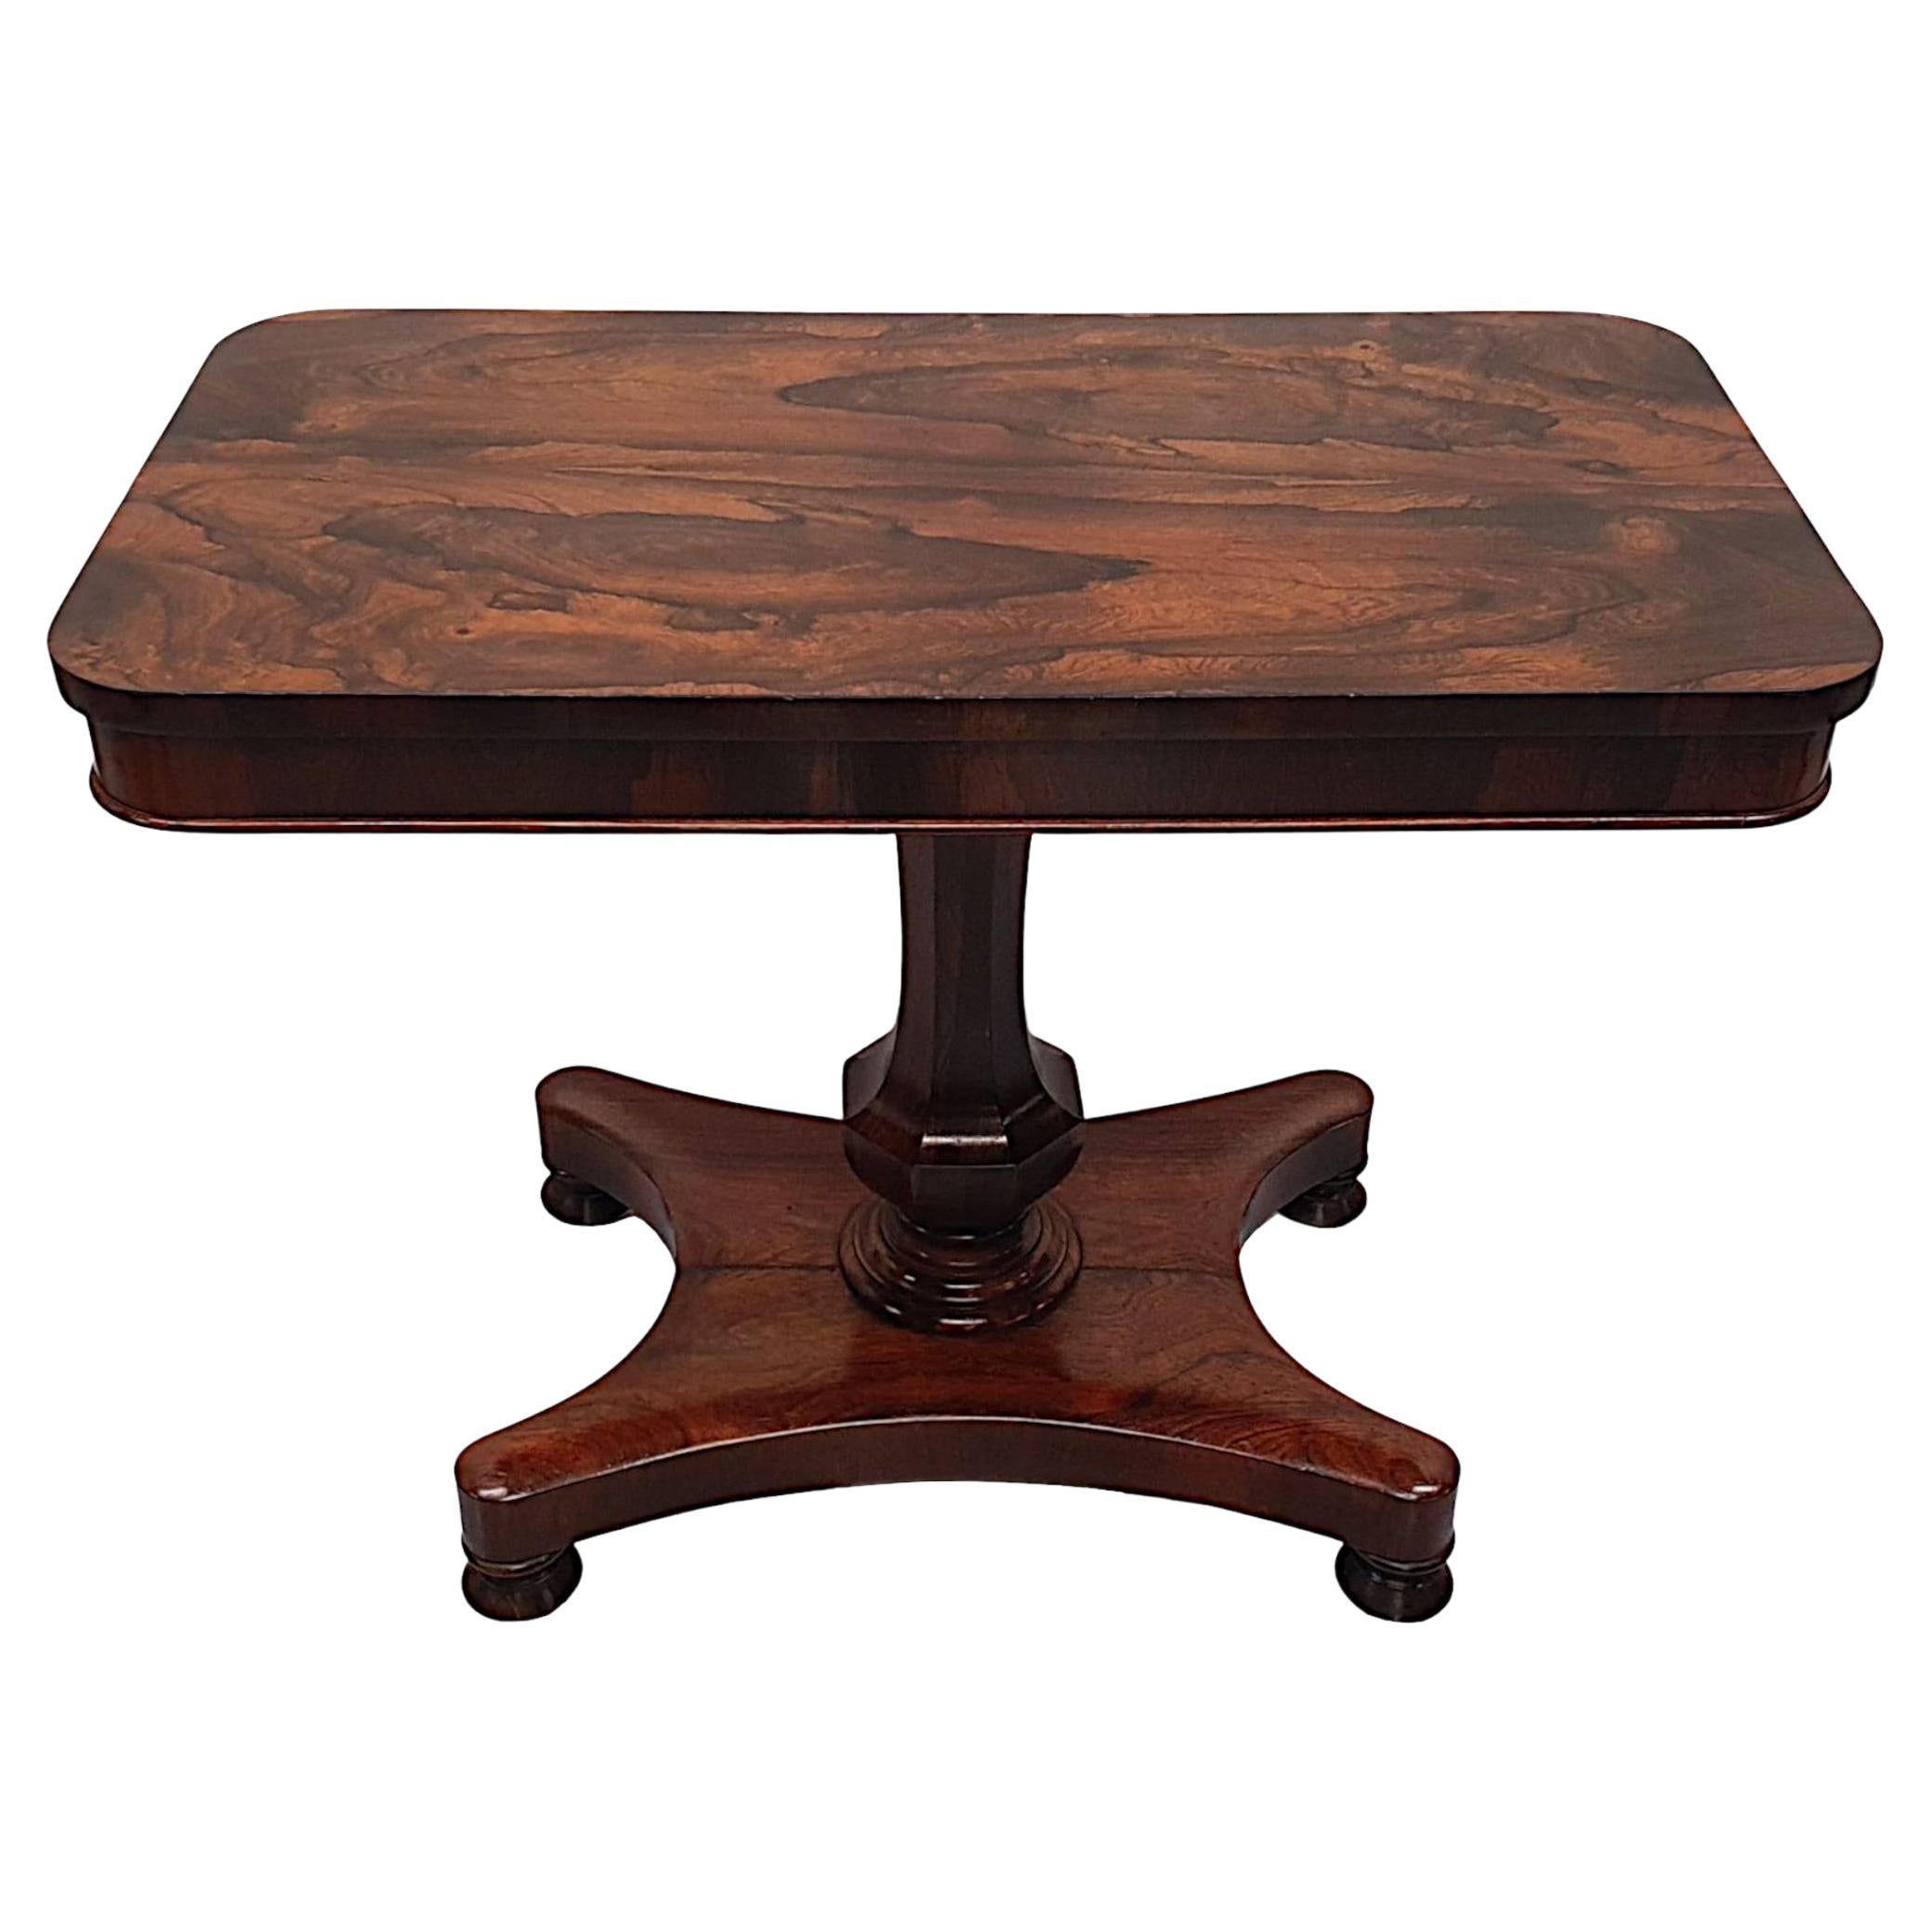  Magnifique table d'appoint ou de centre en bois fruitier du début du 19ème siècle